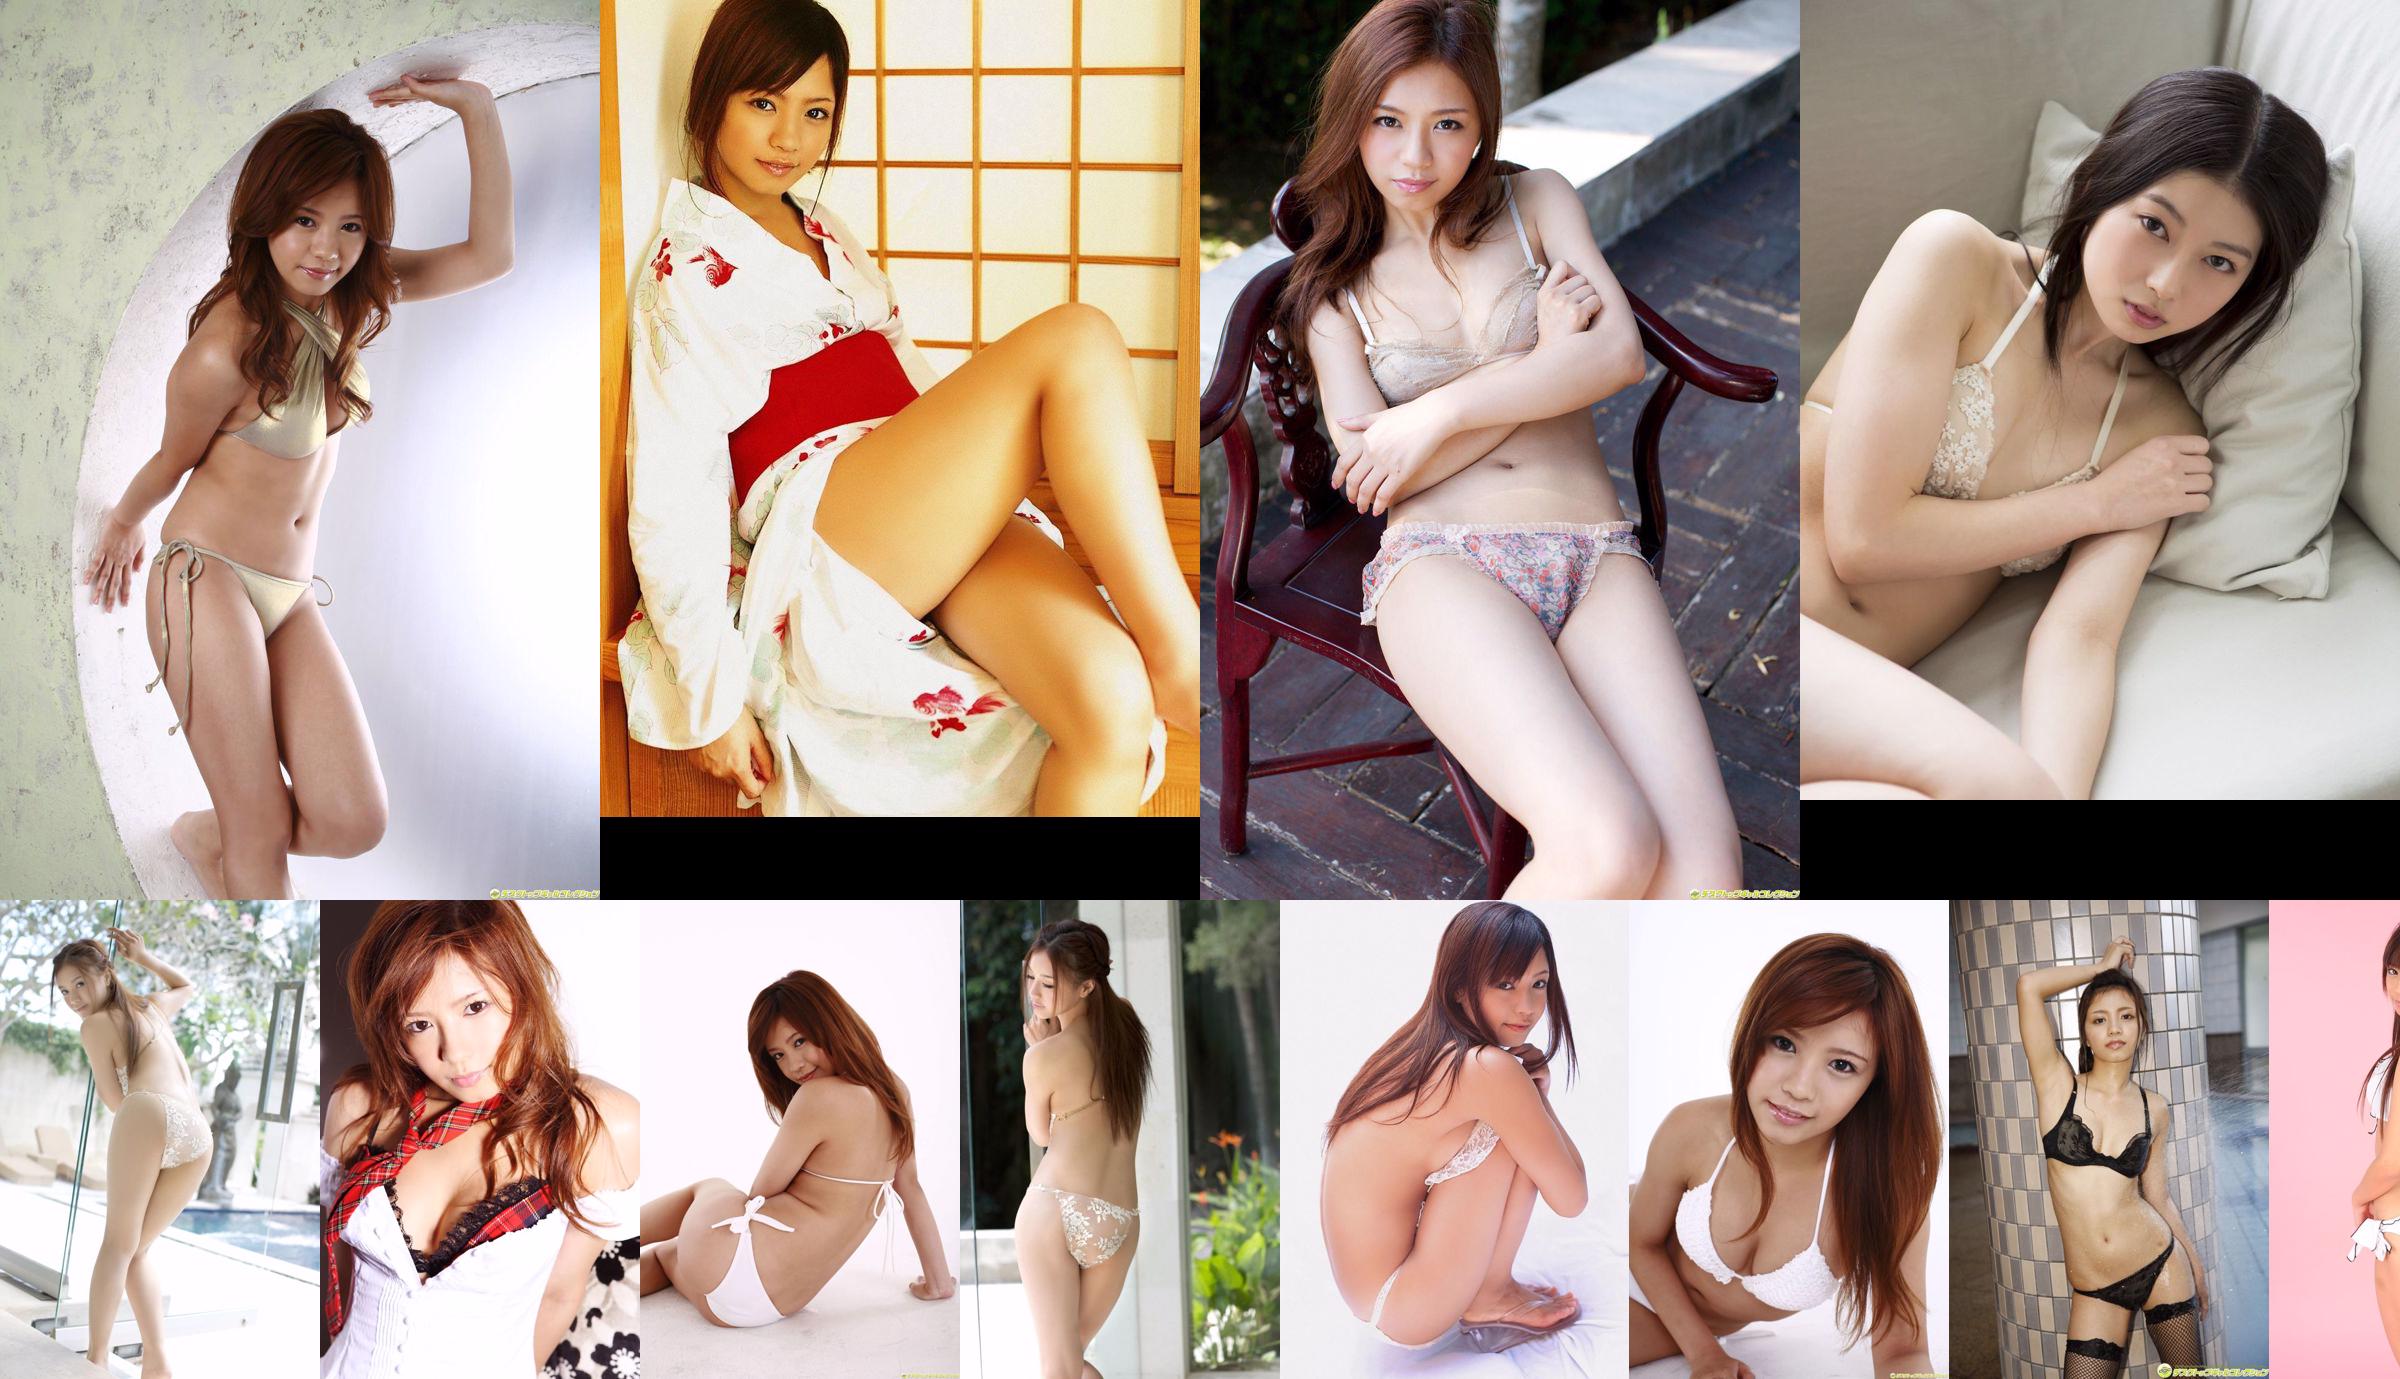 Reimi Tachibana << La femme qui a le sex-appeal d'un adulte attire à la limite >> [DGC] NO.1071 No.9a881b Page 1